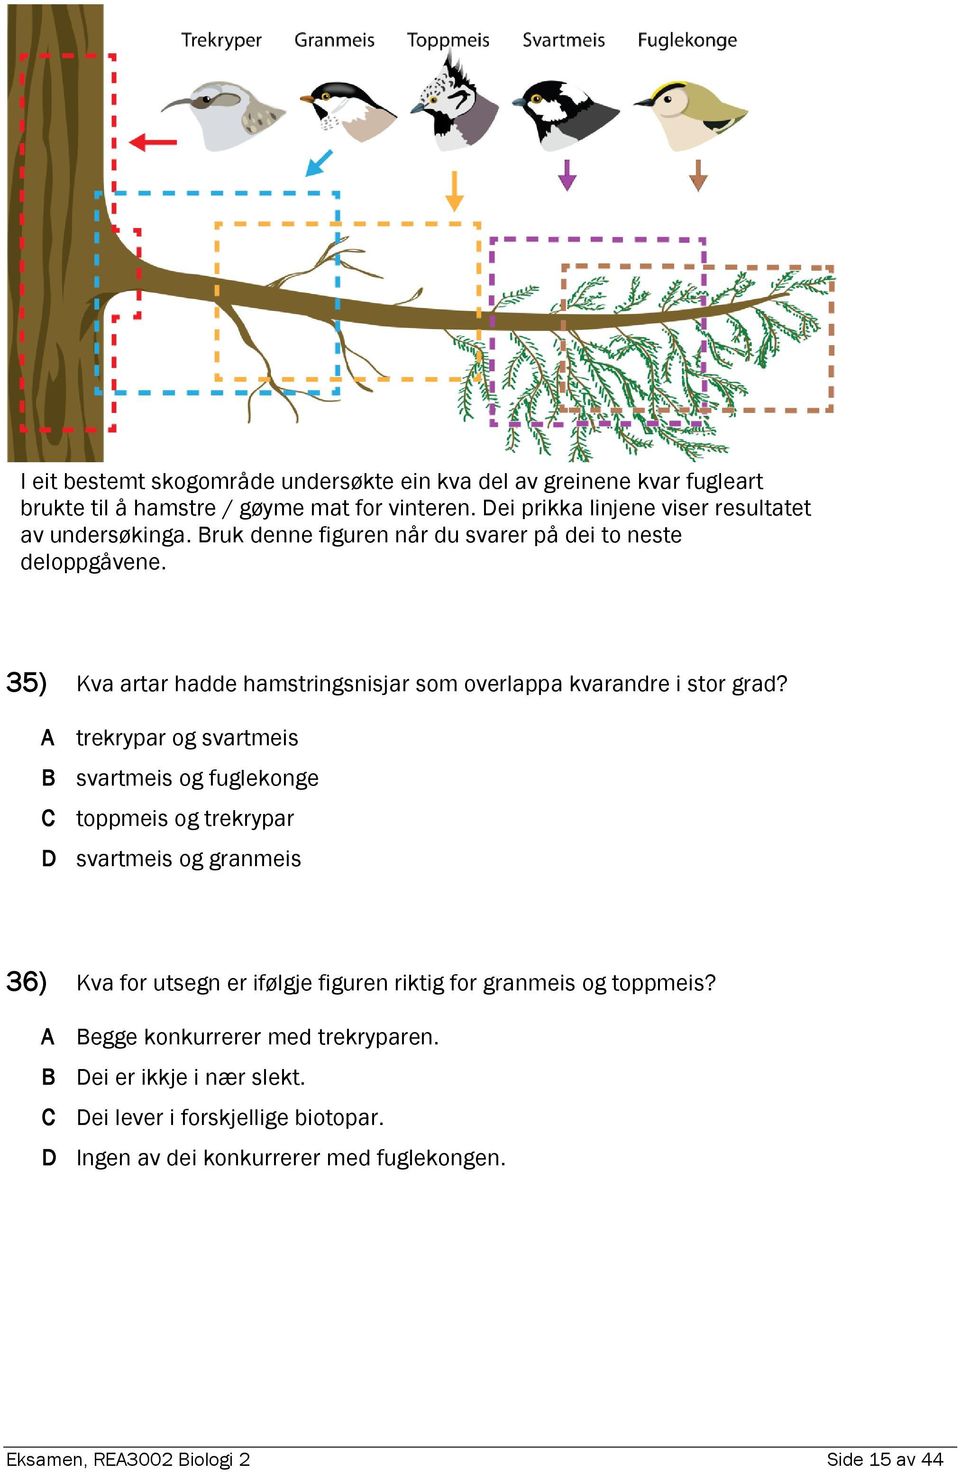 35) Kva artar hadde hamstringsnisjar som overlappa kvarandre i stor grad?